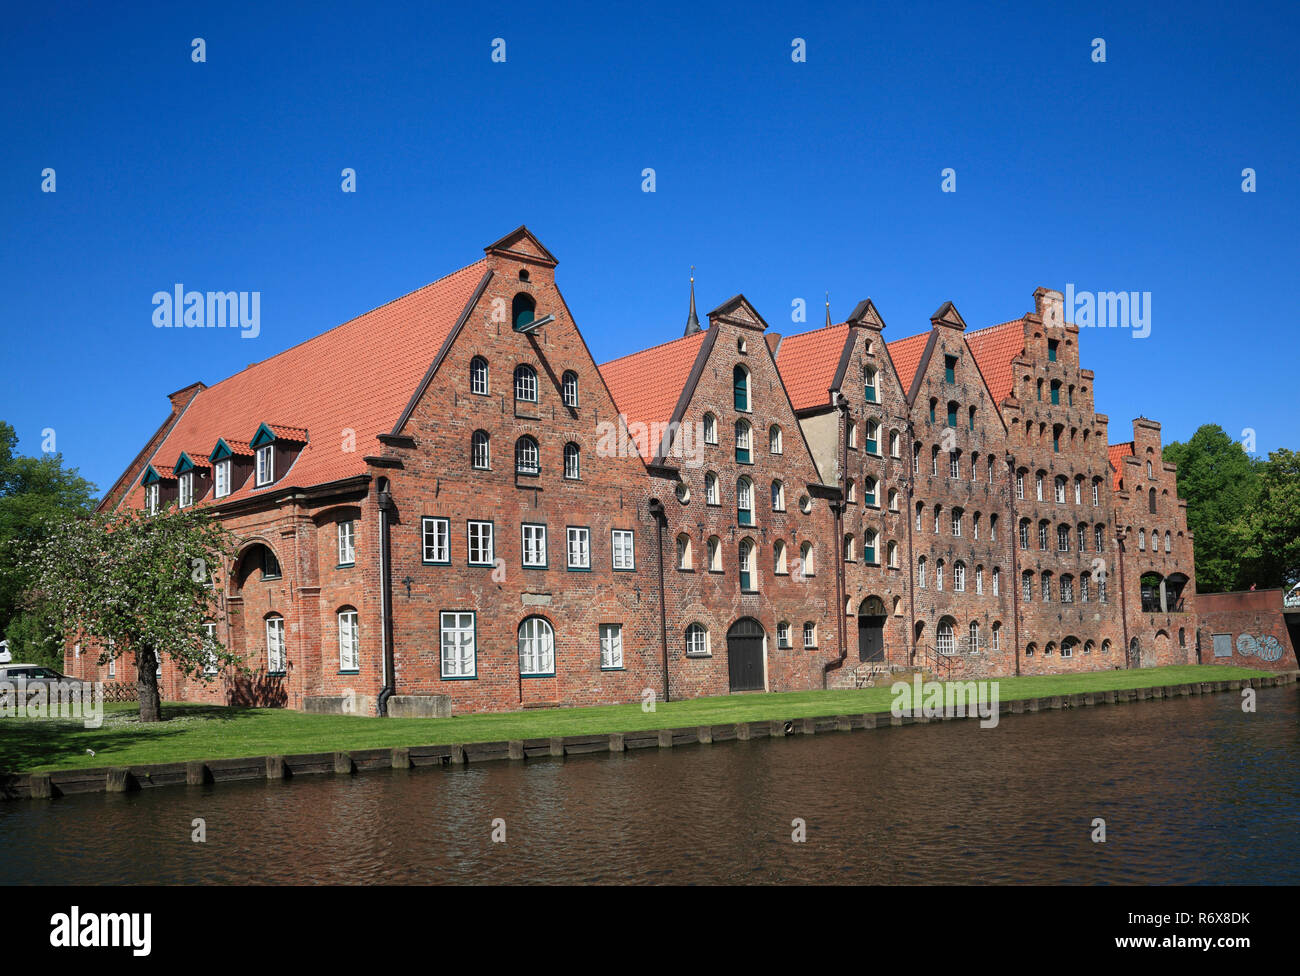 Salzspeicher, historic salt storages at river Trave, Lübeck, Luebeck, Schleswig-Holstein, Germany, Europe Stock Photo